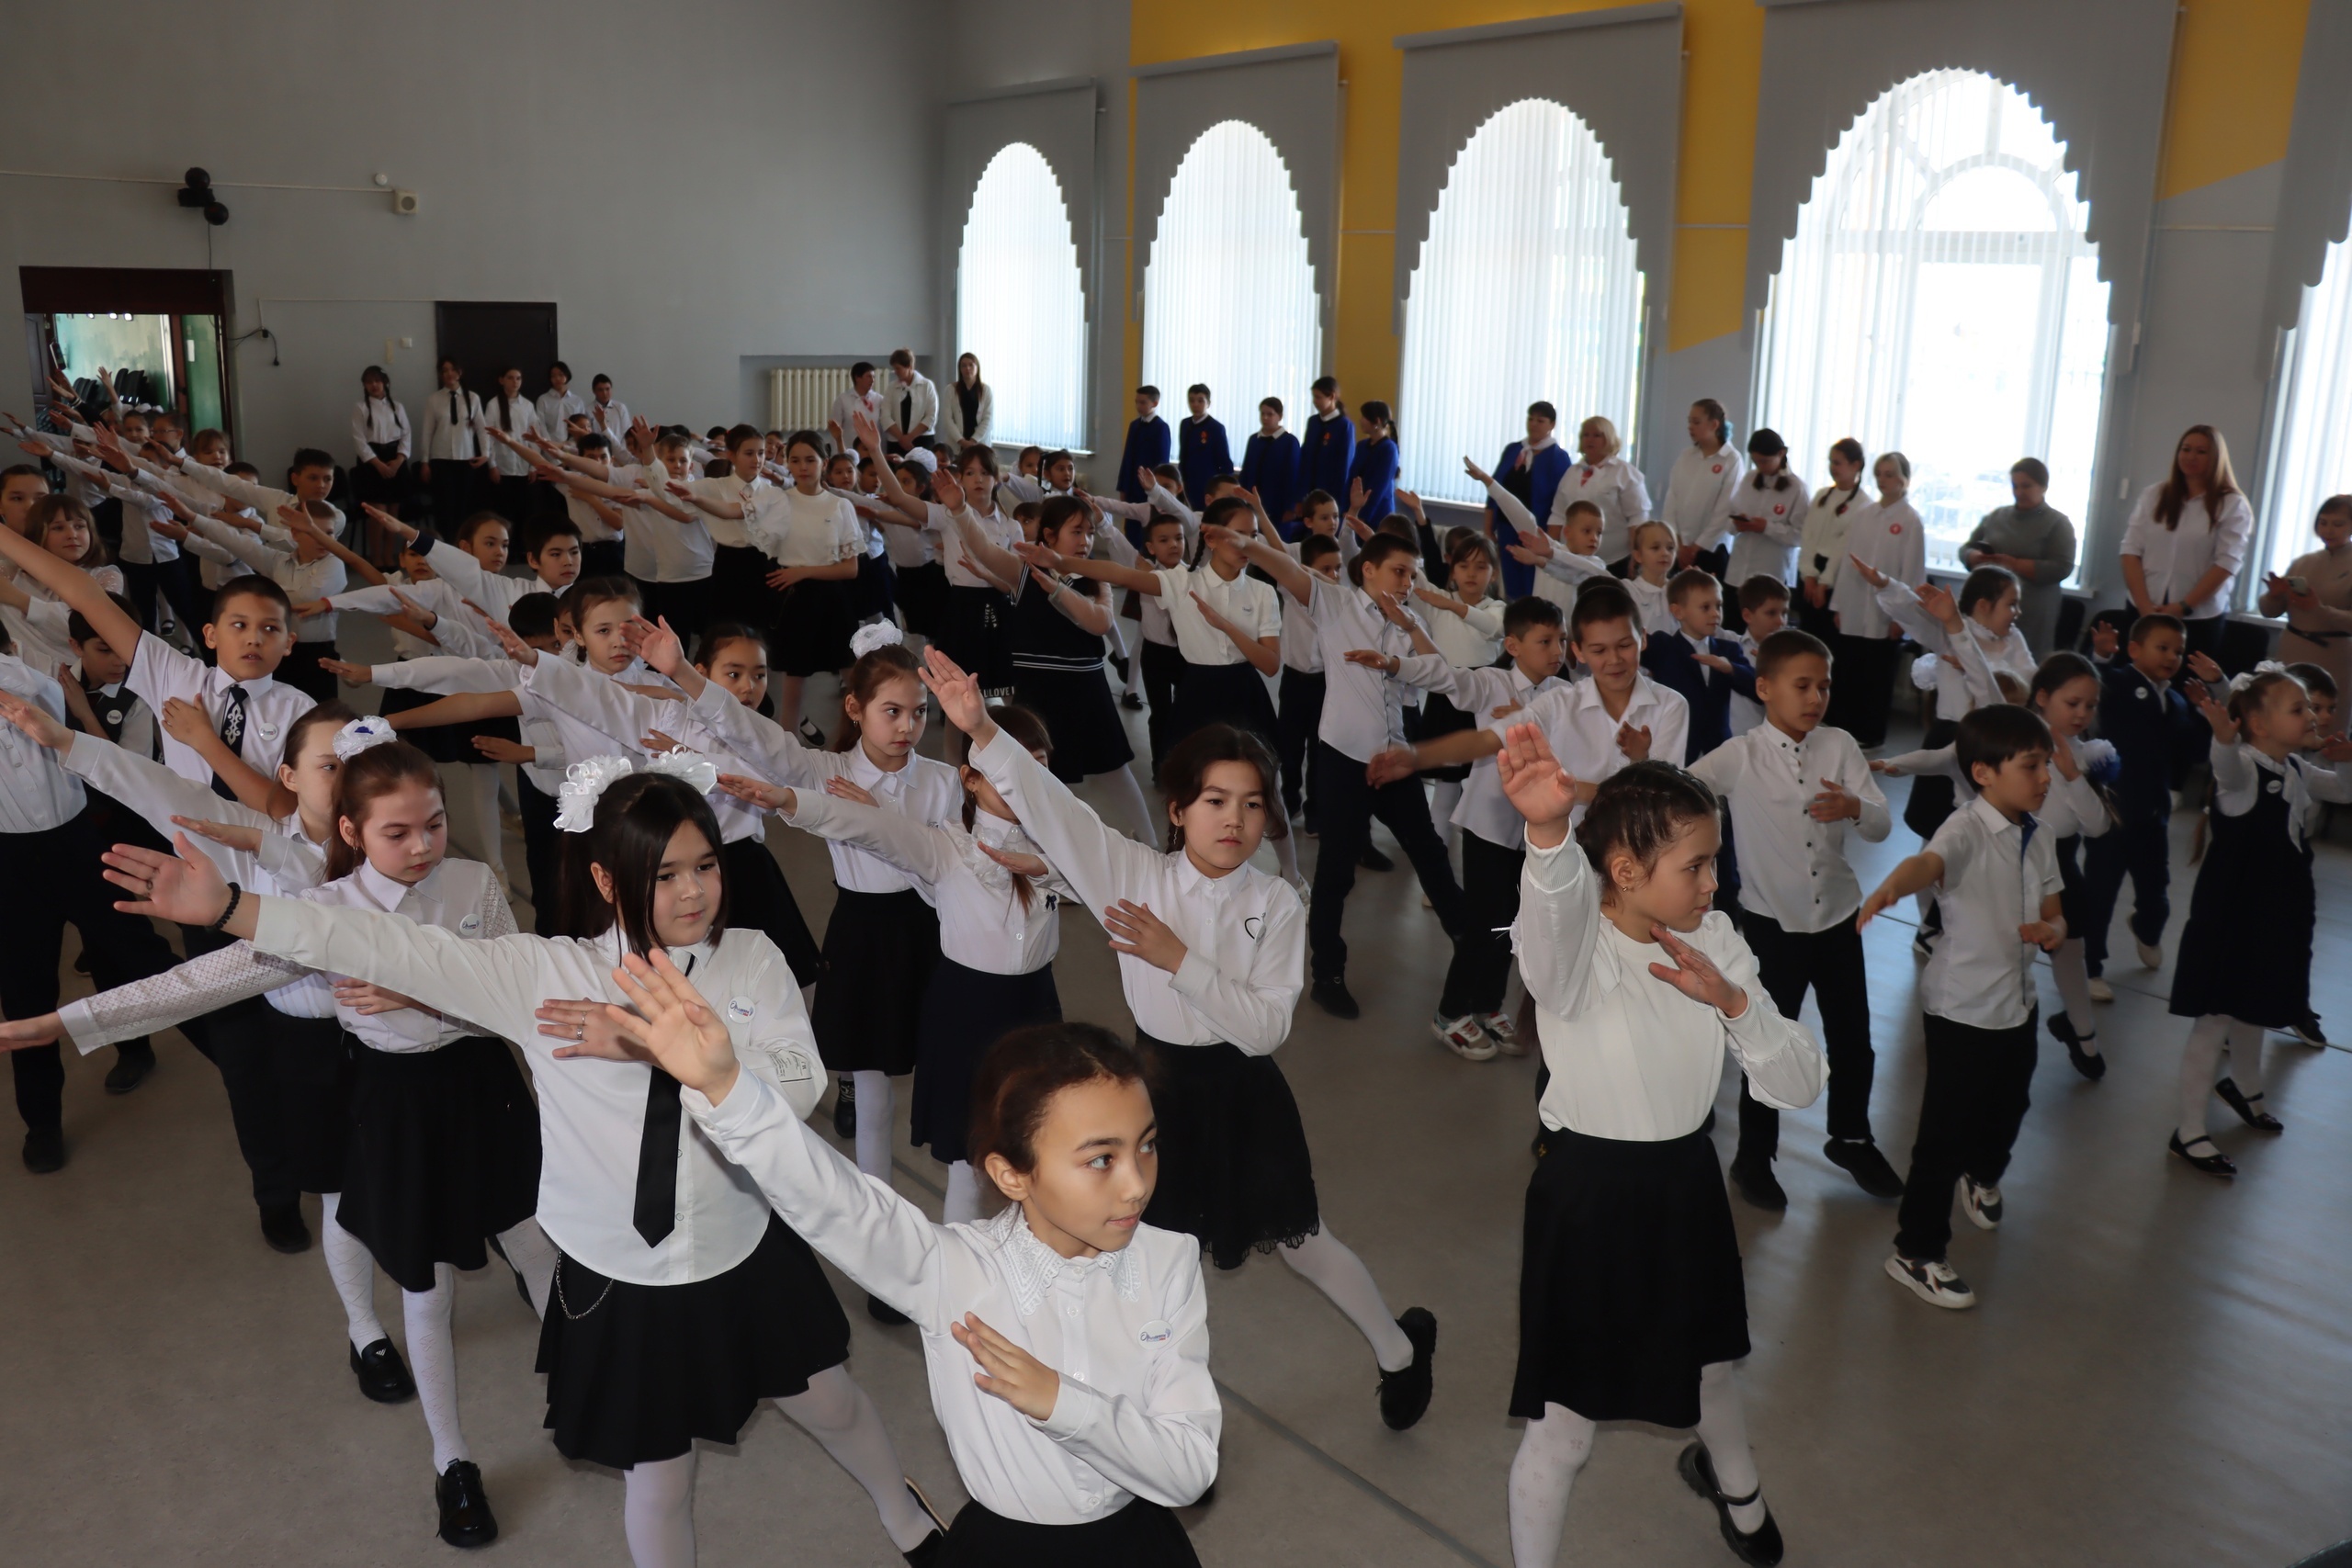 В школе с. Бурибай состоялась торжественная церемония посвящения обучающихся начальных классов в движение "Орлята России"